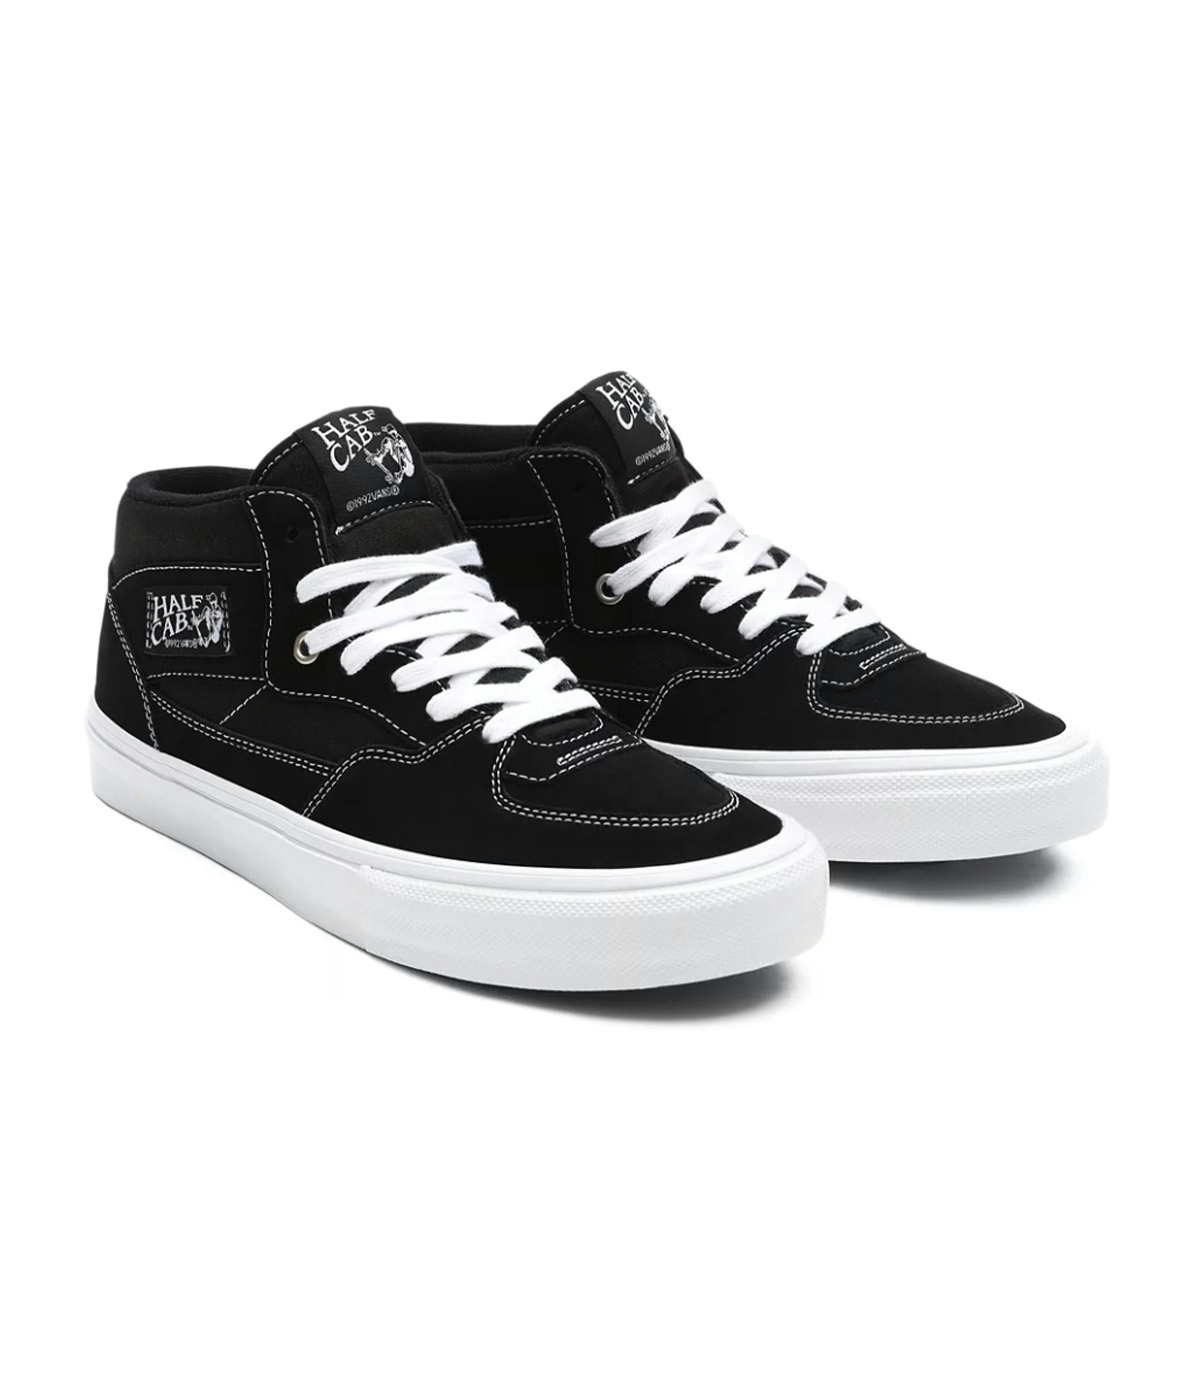 Vans Skate Half Cab Shoes - Skor Black/White